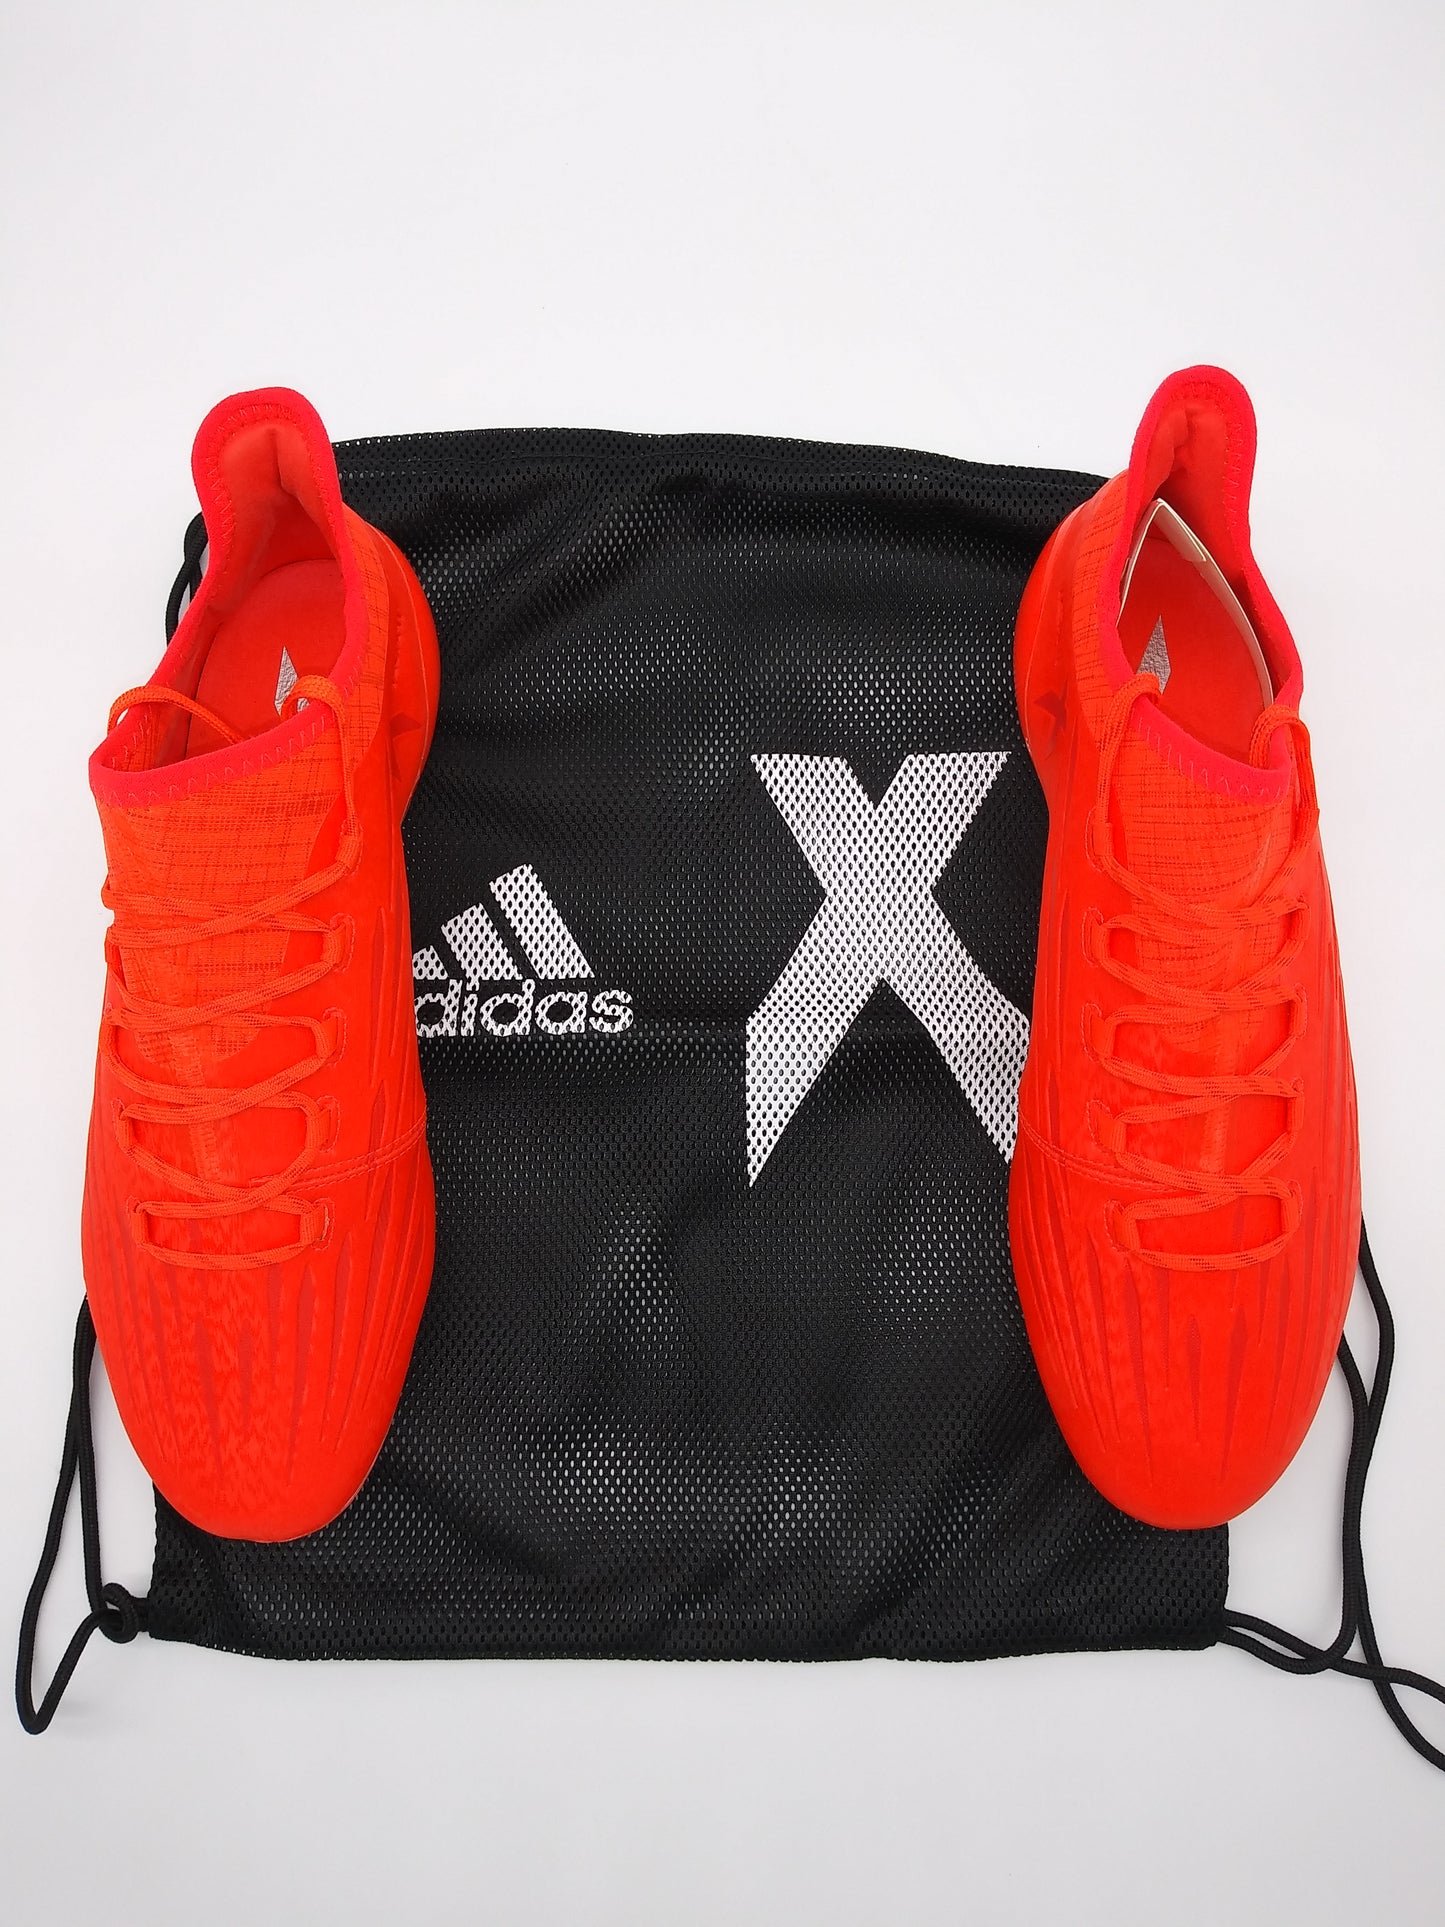 Adidas X 16.1 FG Red